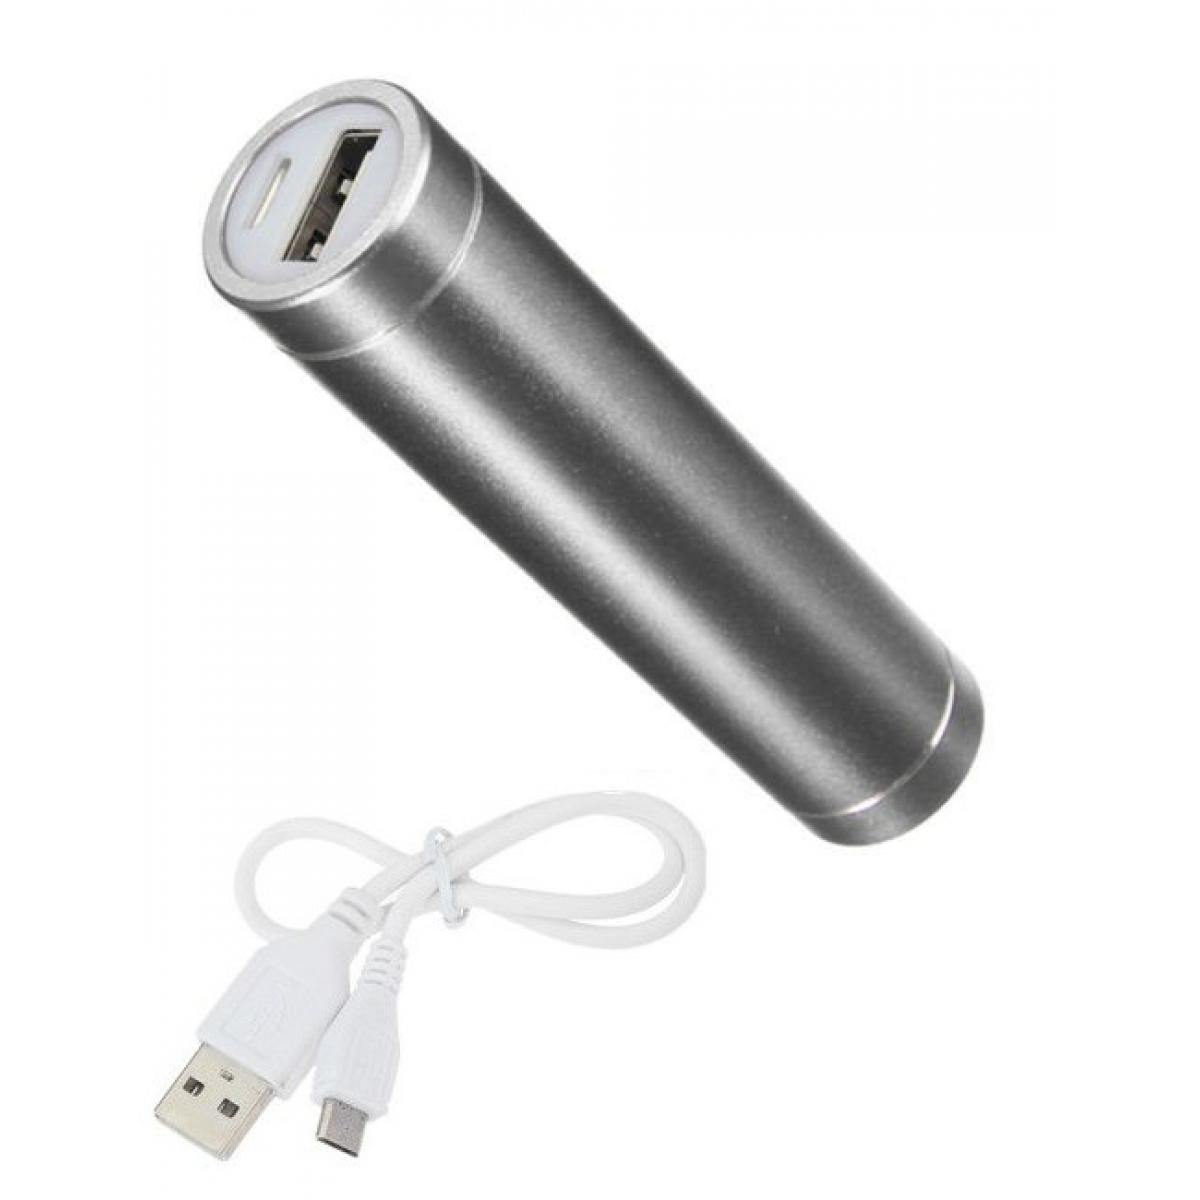 Shot - Batterie Chargeur Externe pour "ASUS ROG Phone 3" Power Bank 2600mAh avec Cable USB/Mirco USB Secours Telephone (ARGENT) - Chargeur secteur téléphone